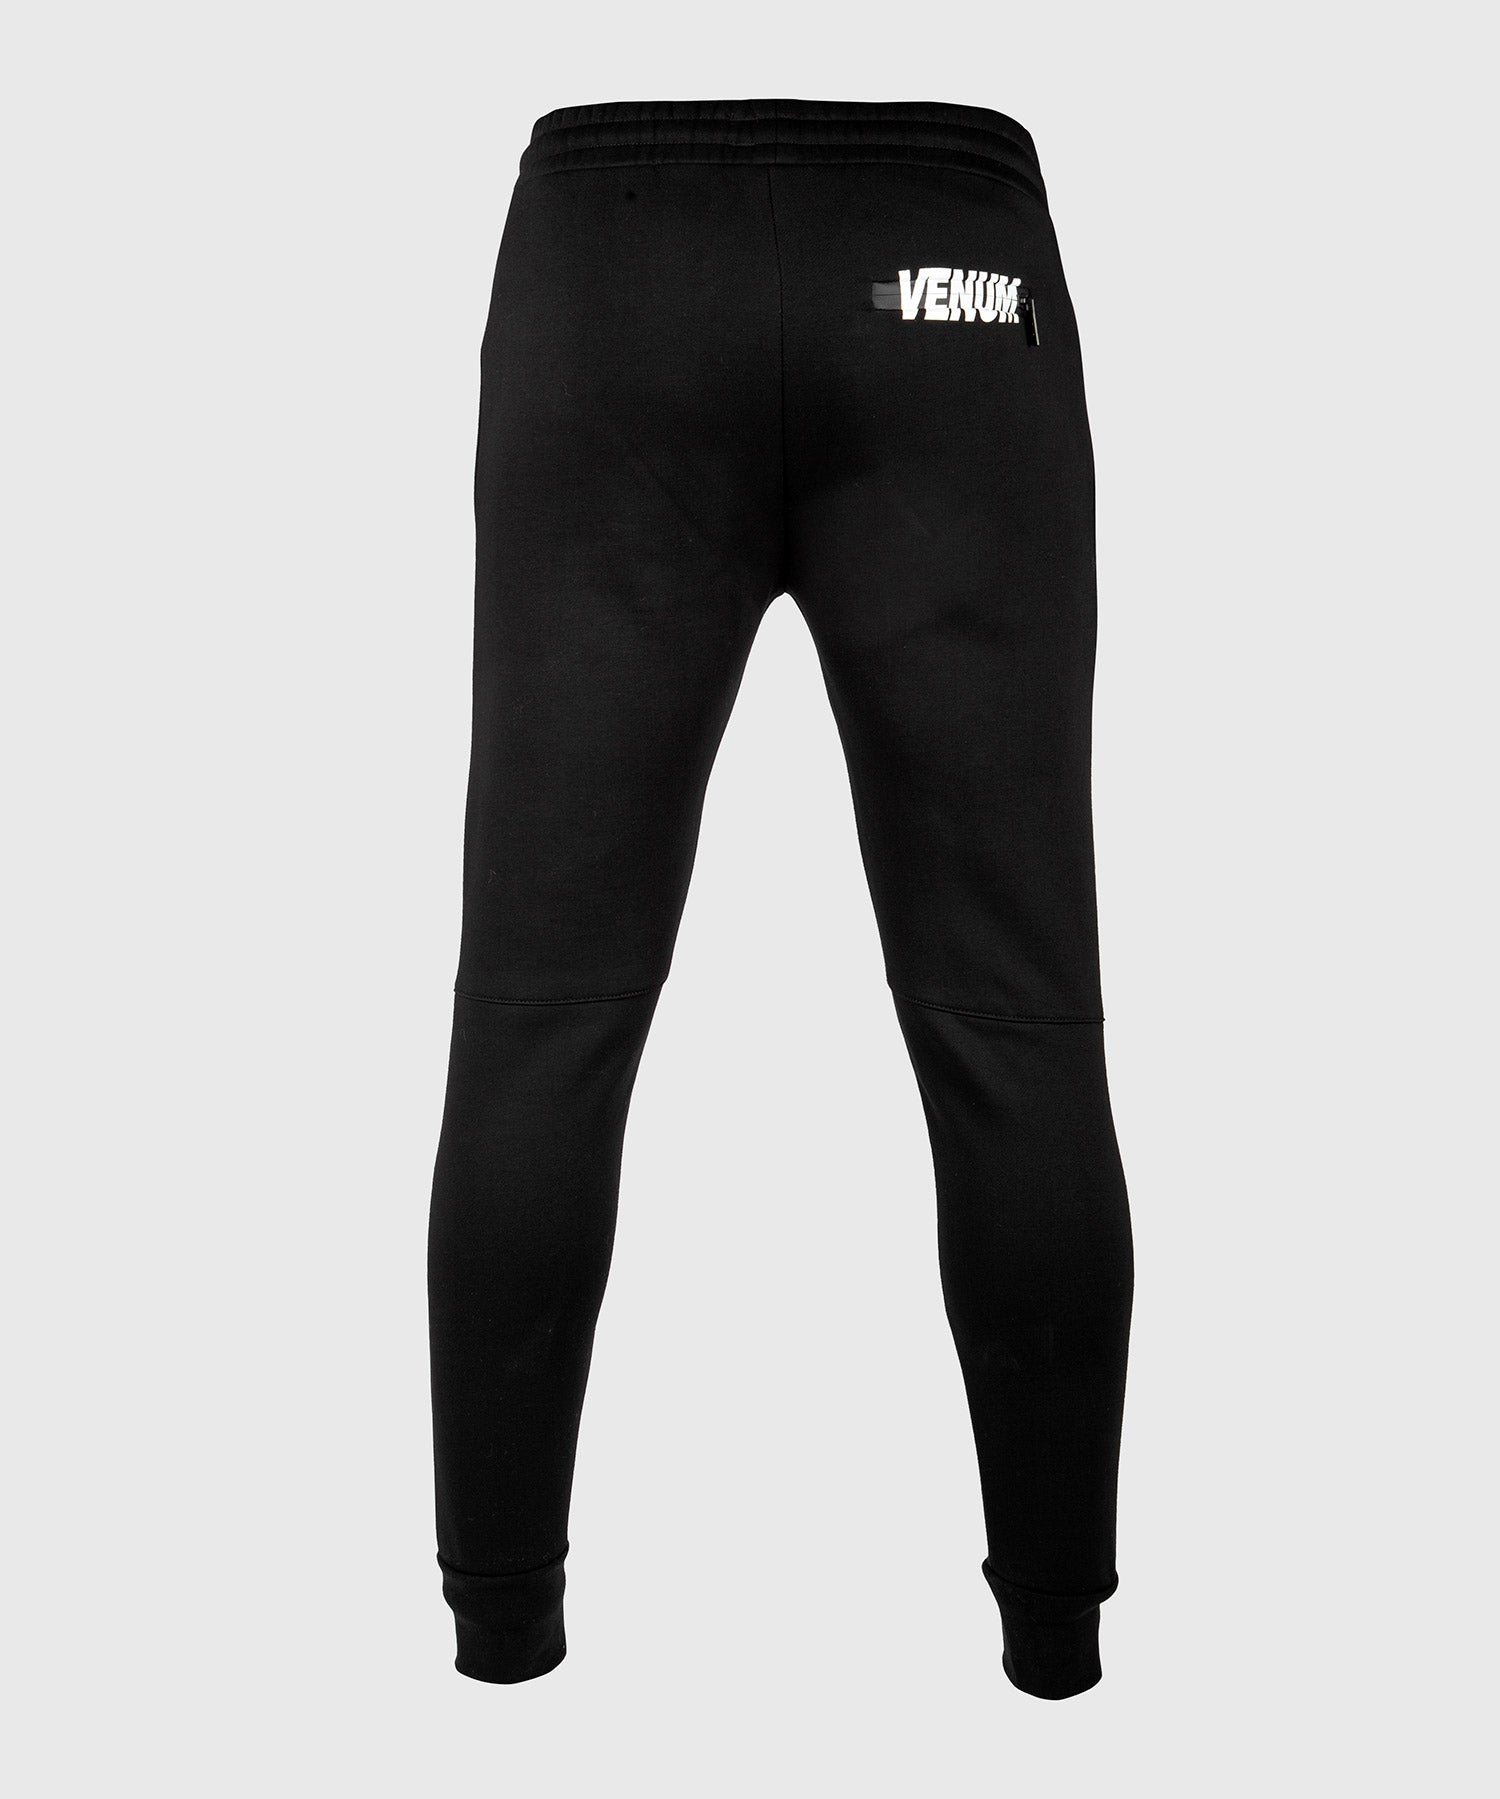 Pantalon de jogging Venum Classic Noir / Noir - Venum